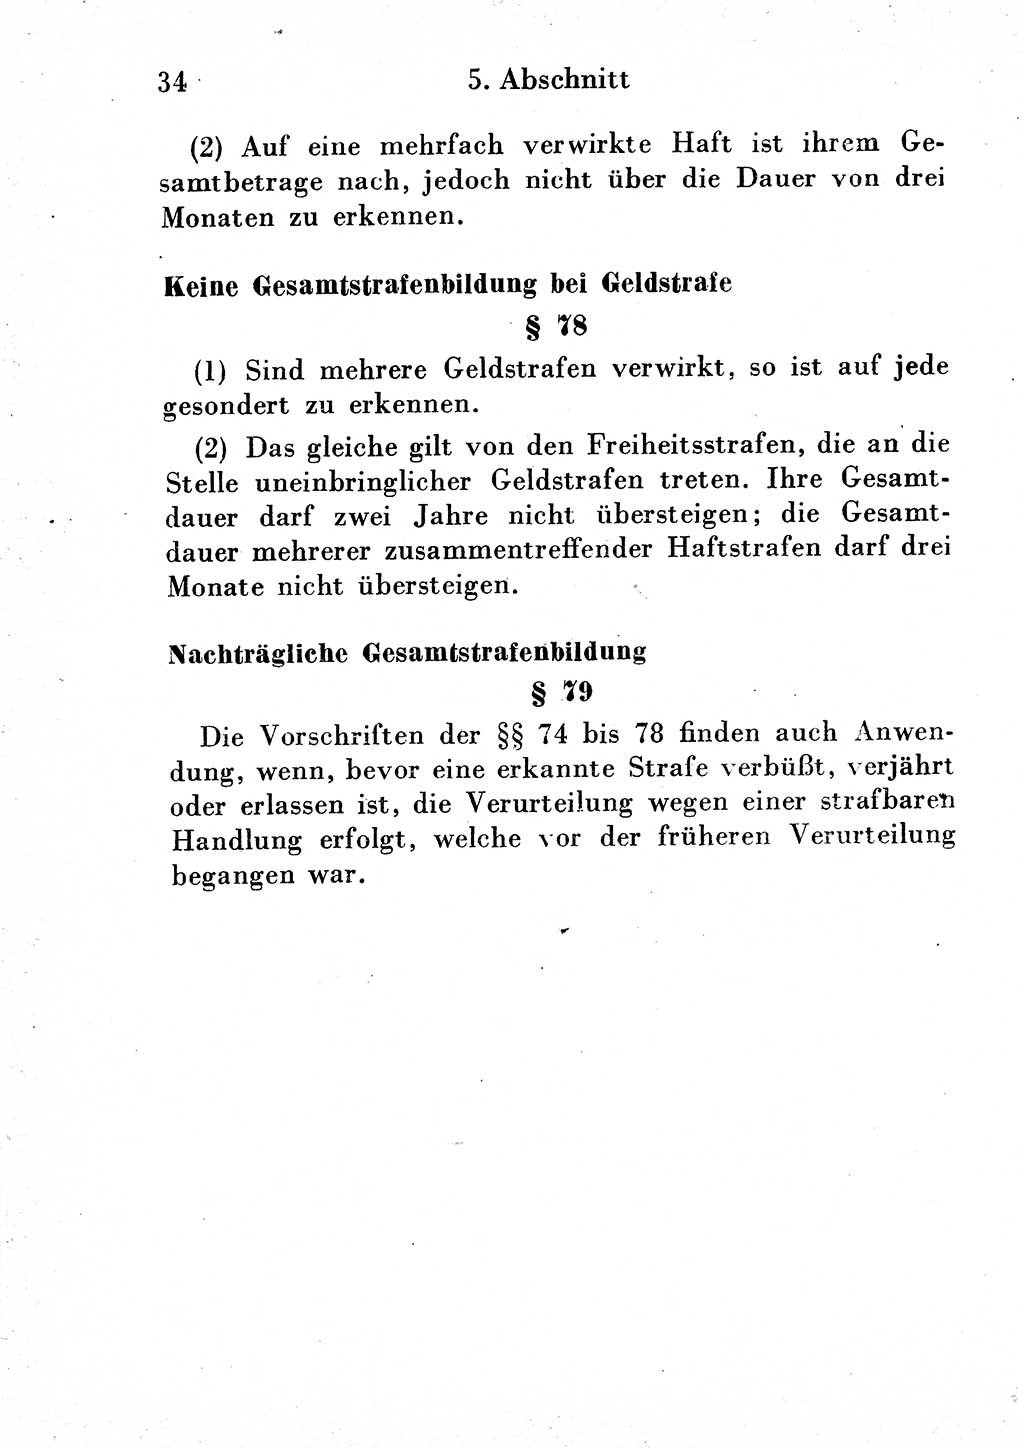 Strafgesetzbuch (StGB) und andere Strafgesetze [Deutsche Demokratische Republik (DDR)] 1954, Seite 34 (StGB Strafges. DDR 1954, S. 34)